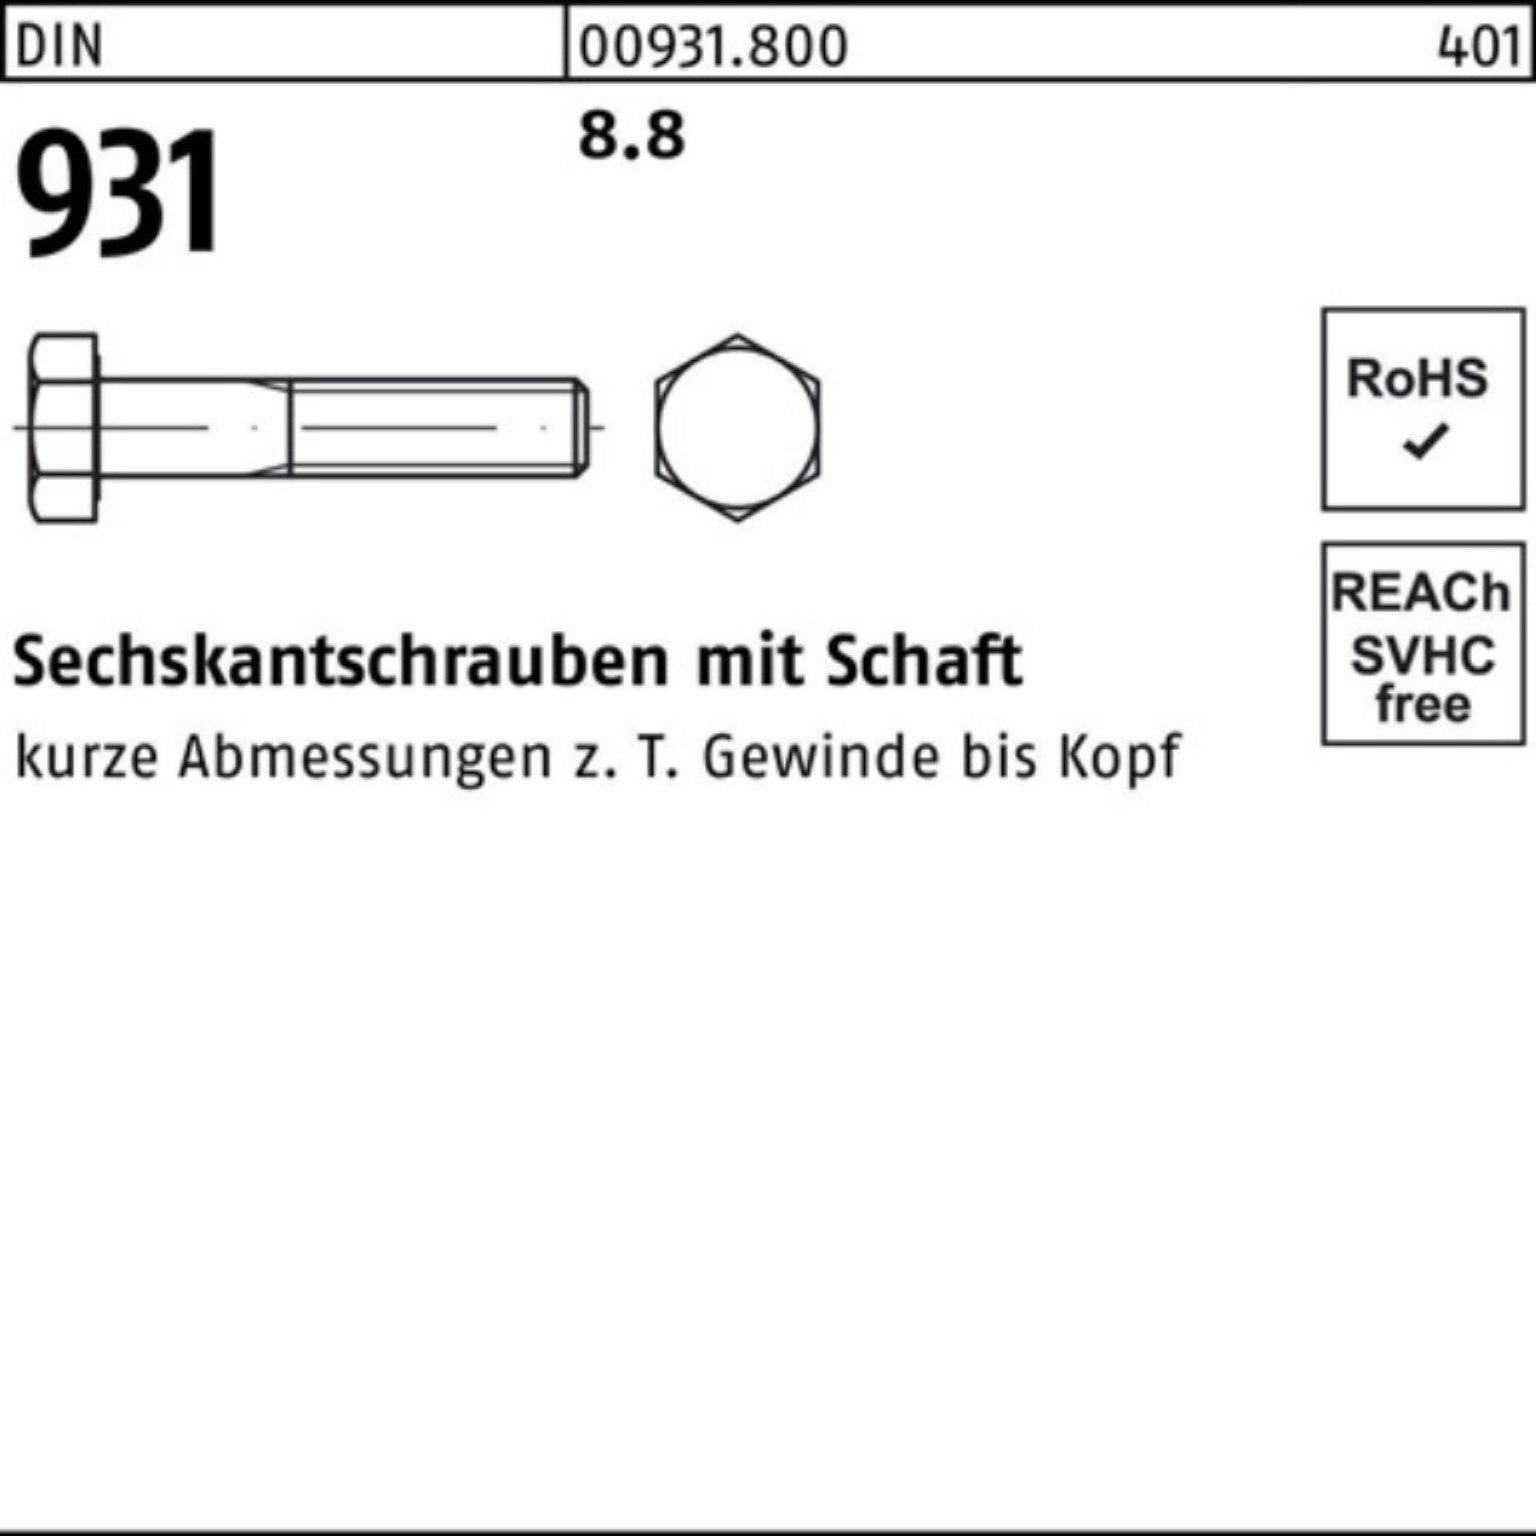 M48x Reyher 1 100er Schaft 931 8.8 420 DIN Stück Pack Sechskantschraube DIN Sechskantschraube